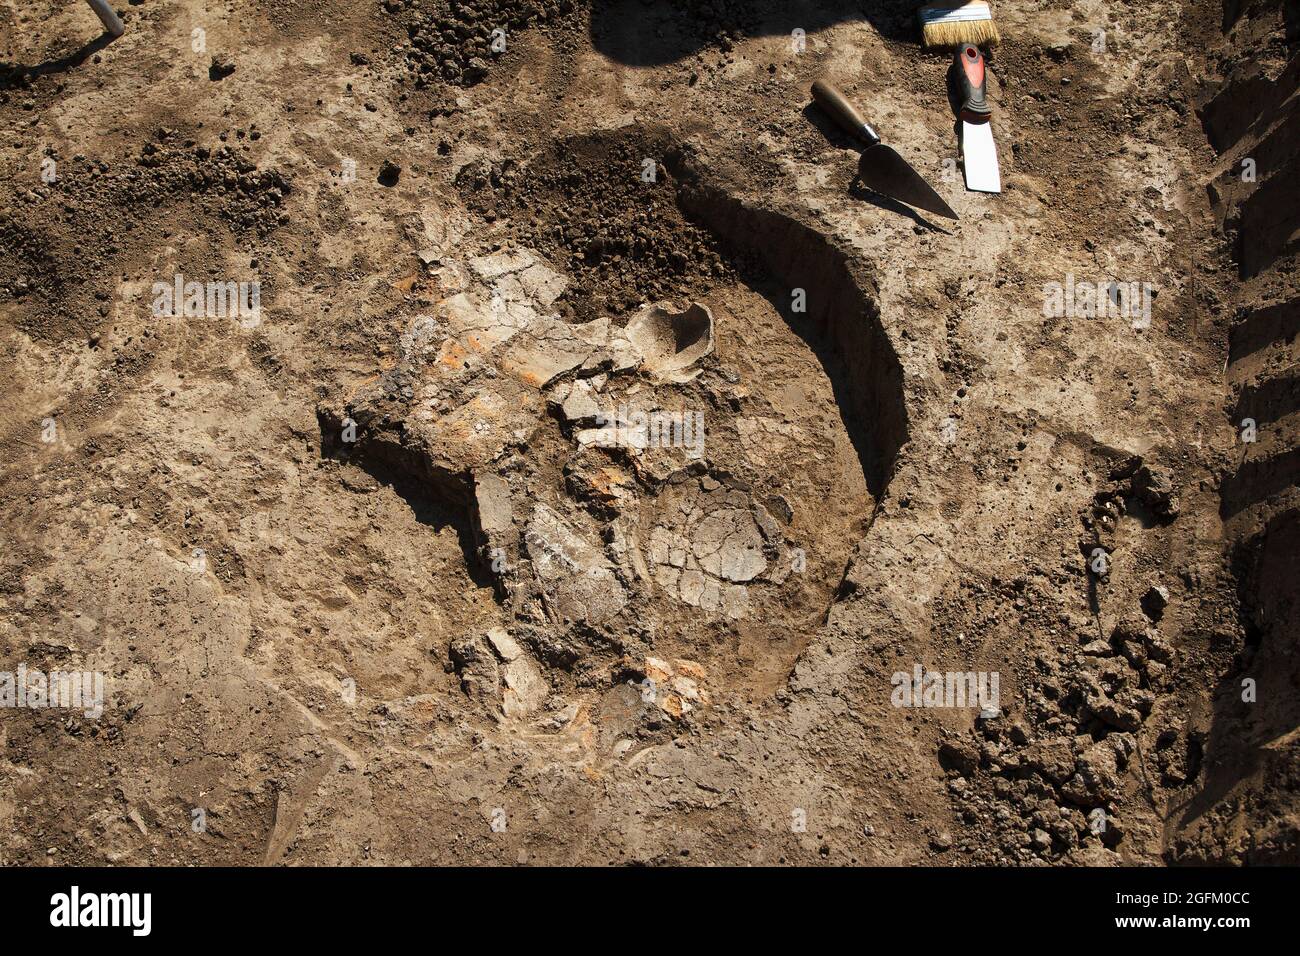 Scavi archeologici, archeologi lavorano, scavare un antico manufatto di argilla con attrezzi speciali nel terreno Foto Stock